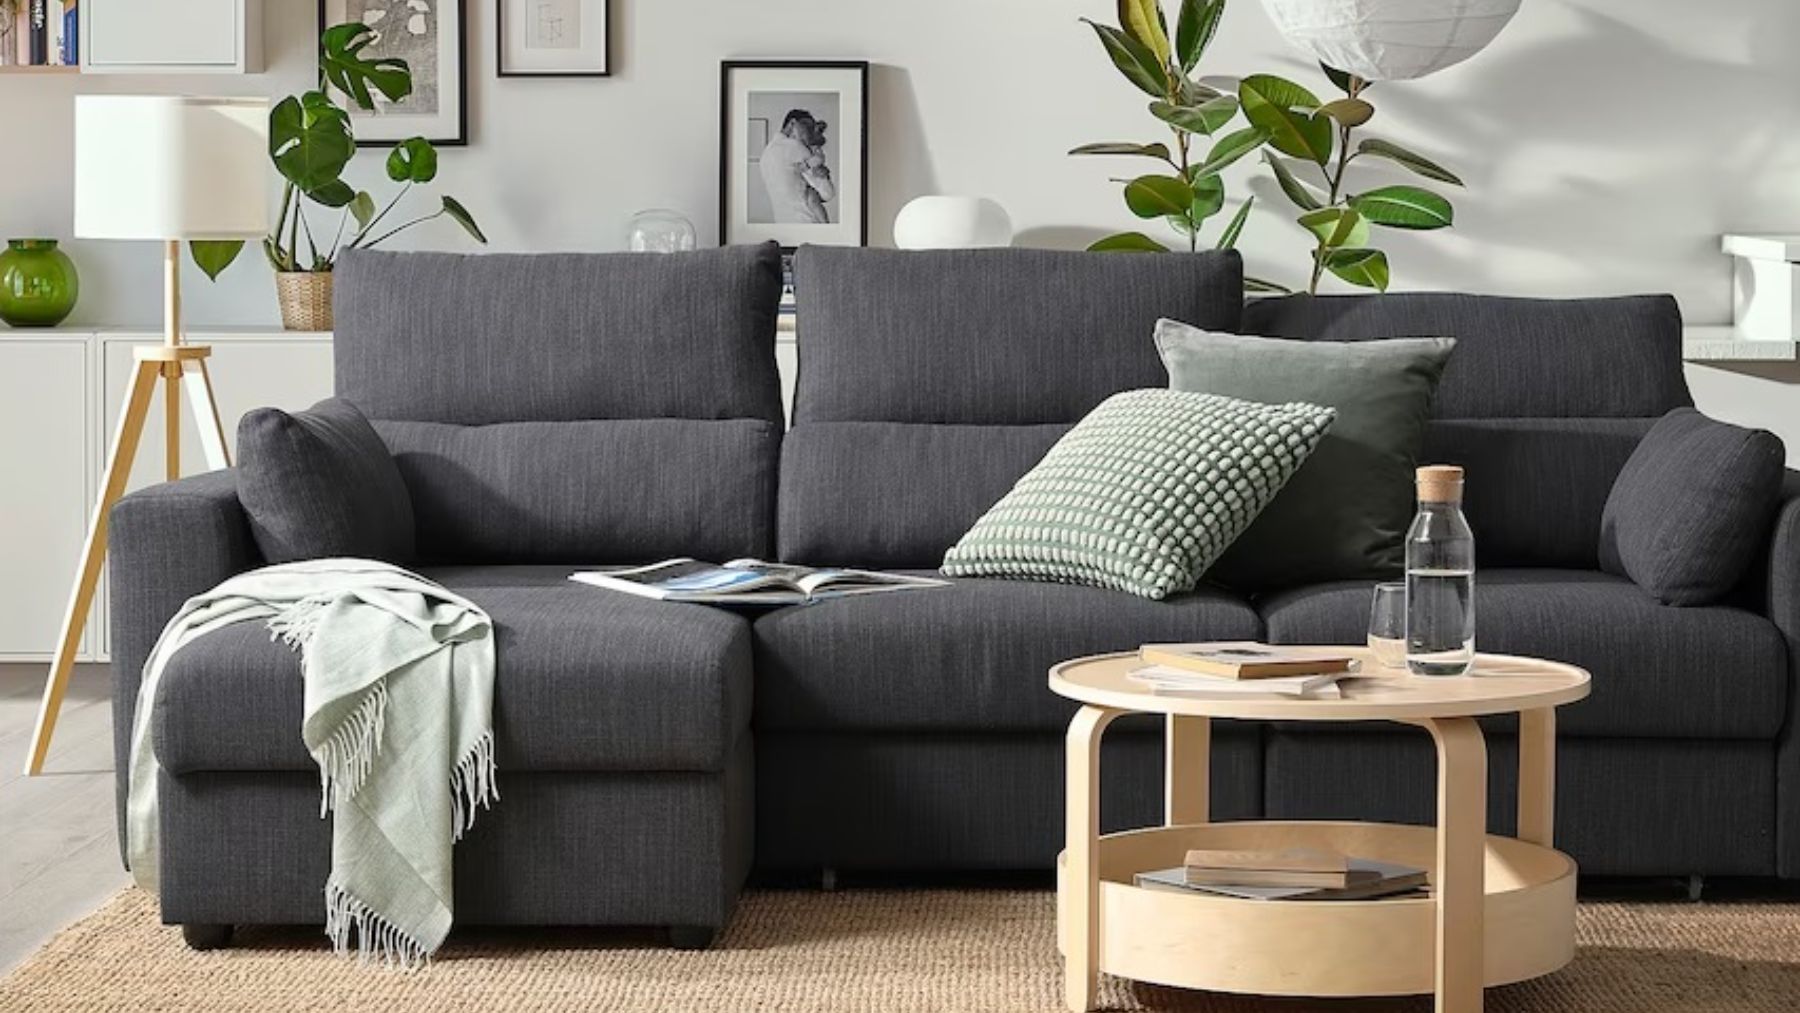 La bajada de precio más espectacular el sofá estrella de Ikea tiene una rebaja 200 euros